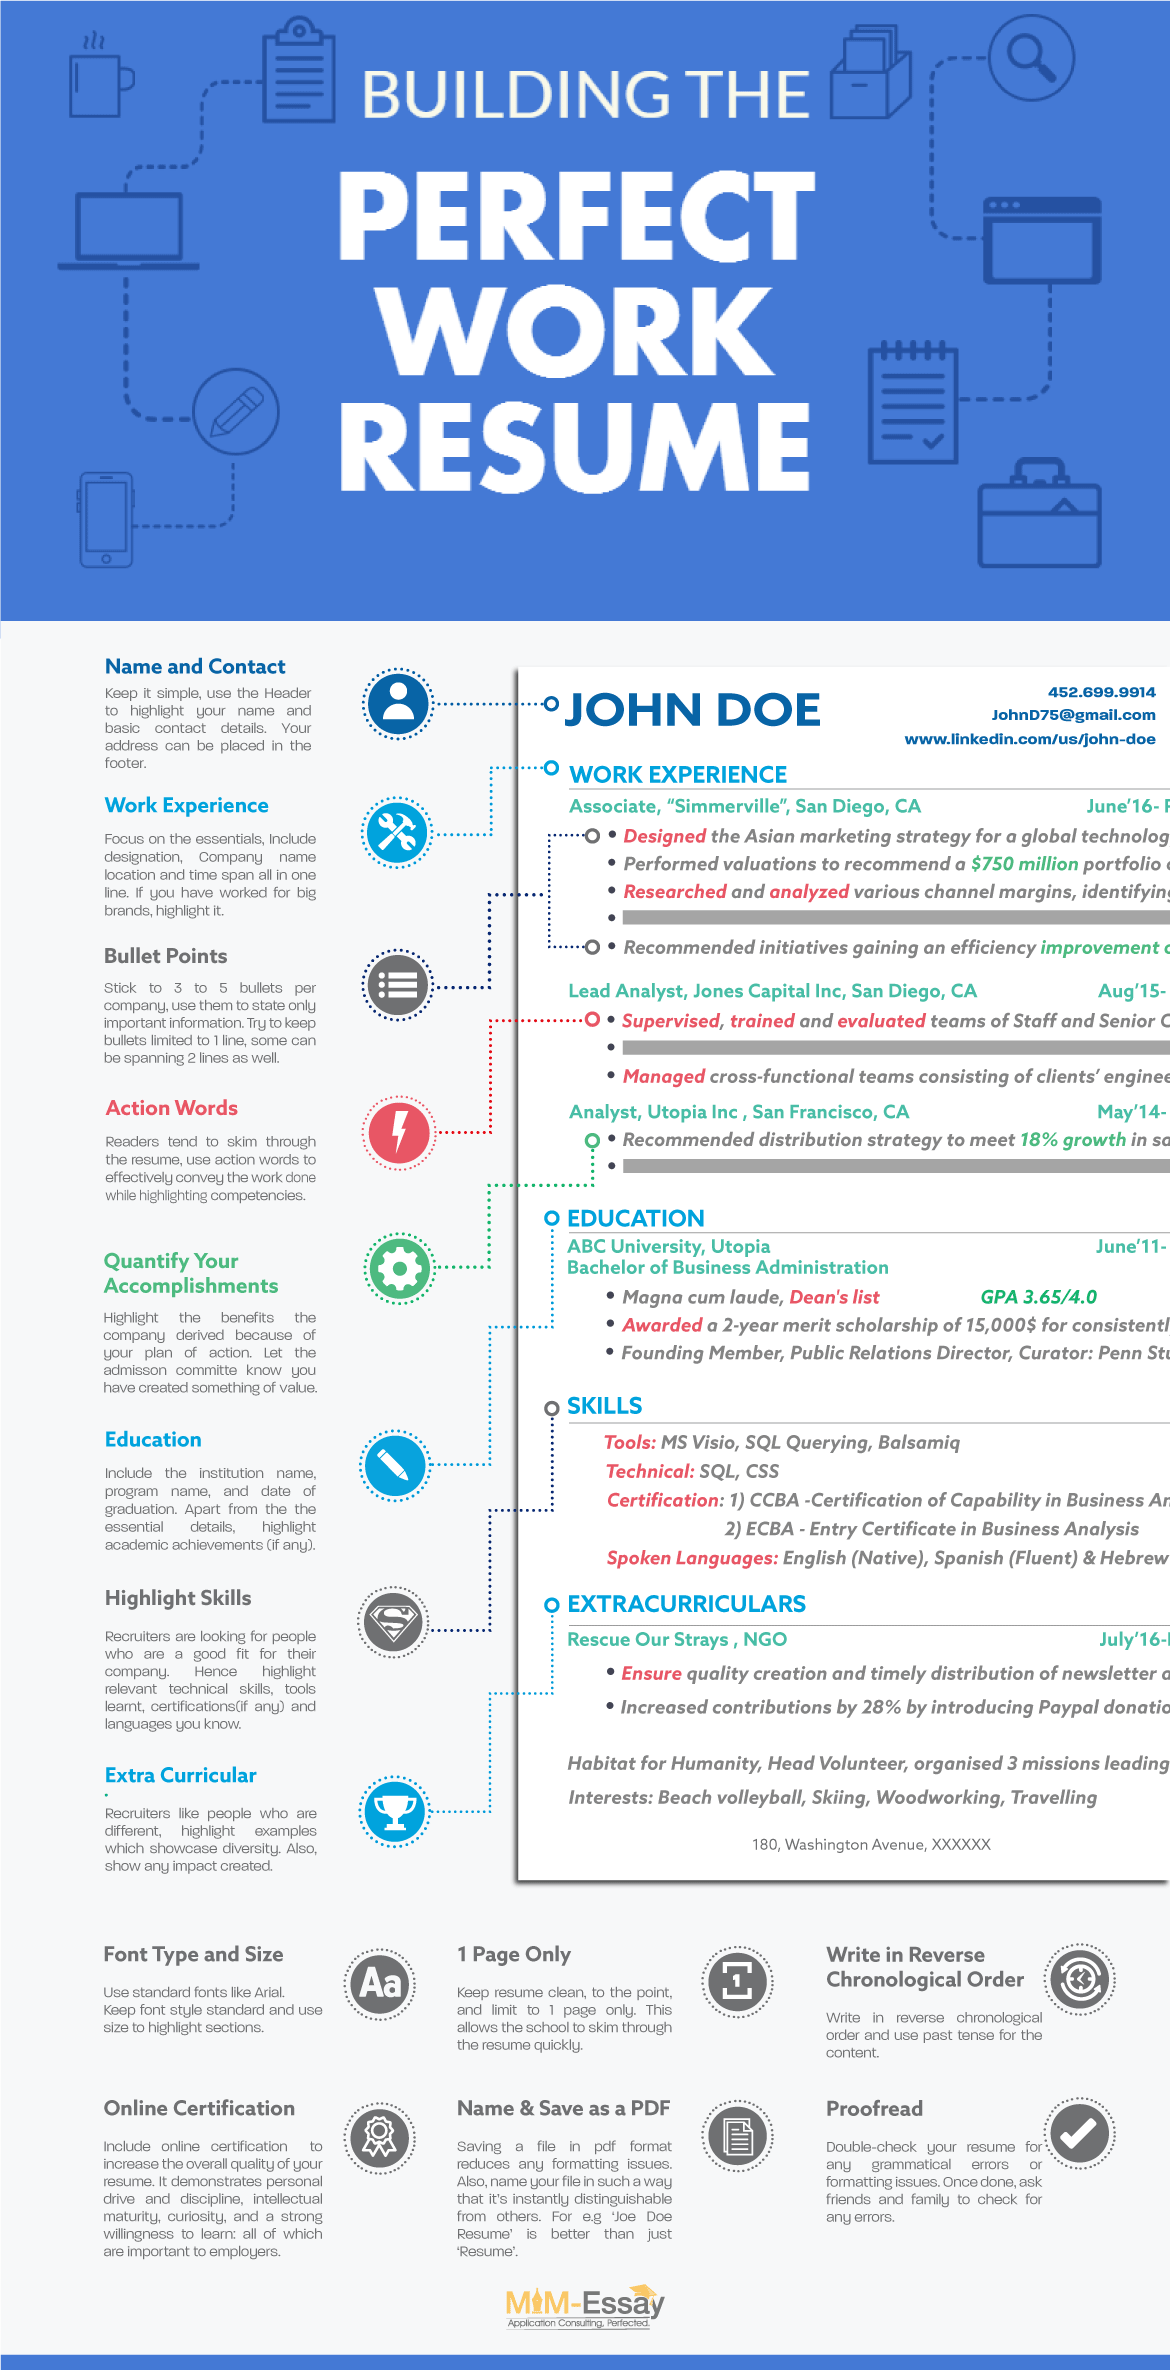 Resume infographic